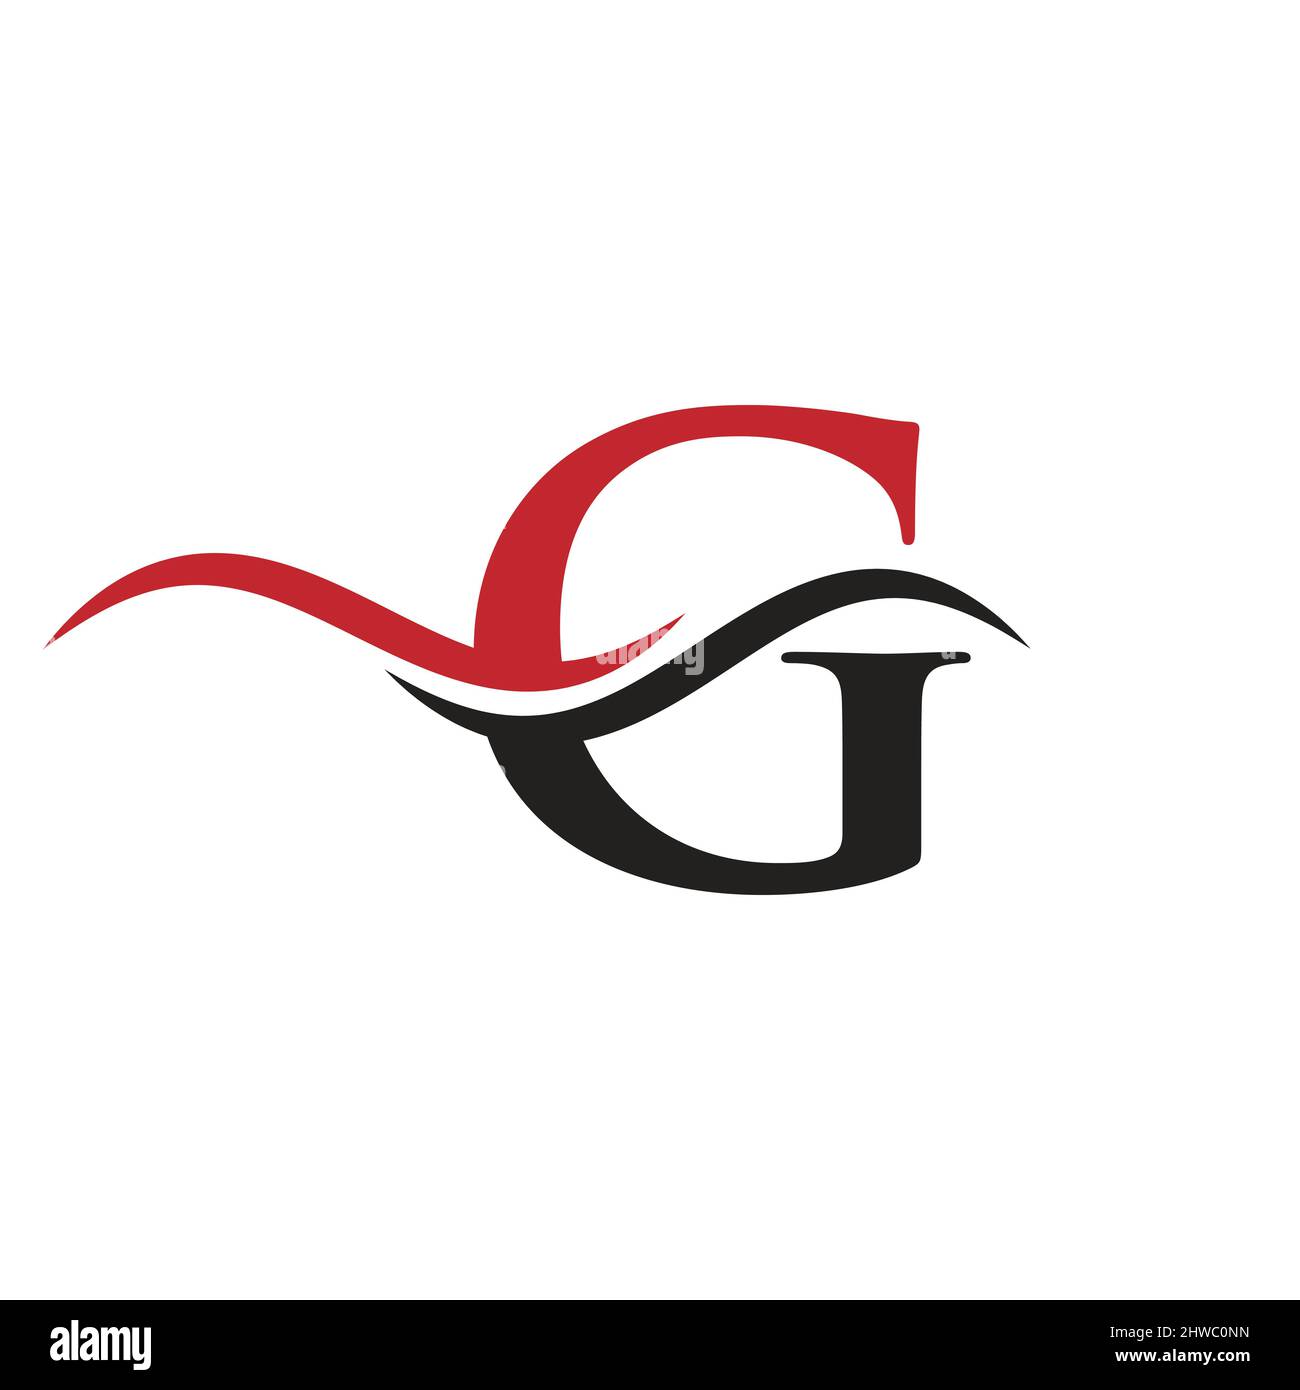 G Logo for luxury branding. Elegant and stylish G logo design for your ...